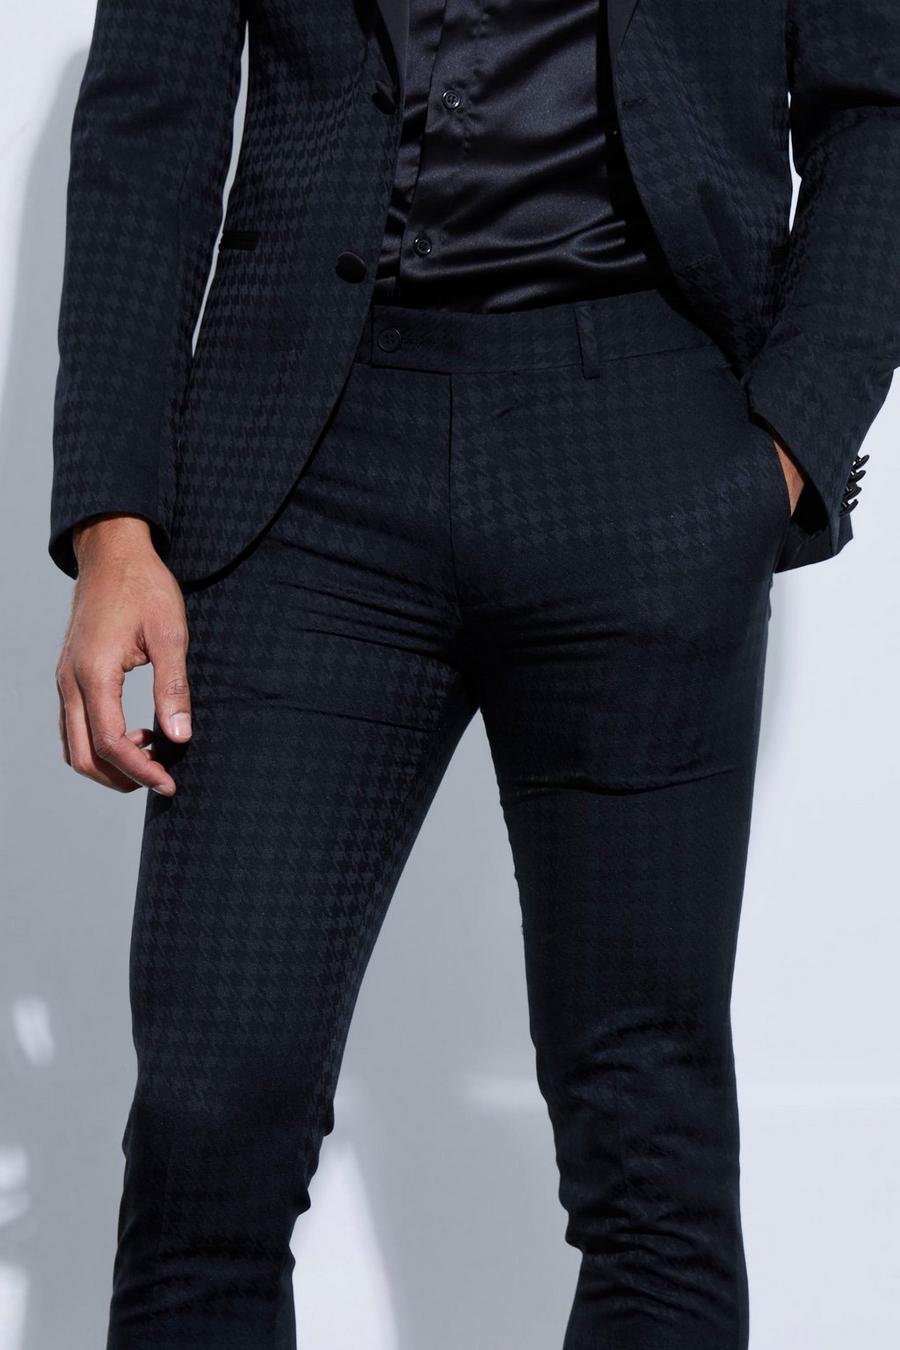 czarne spodnie skinny wzór pepitka